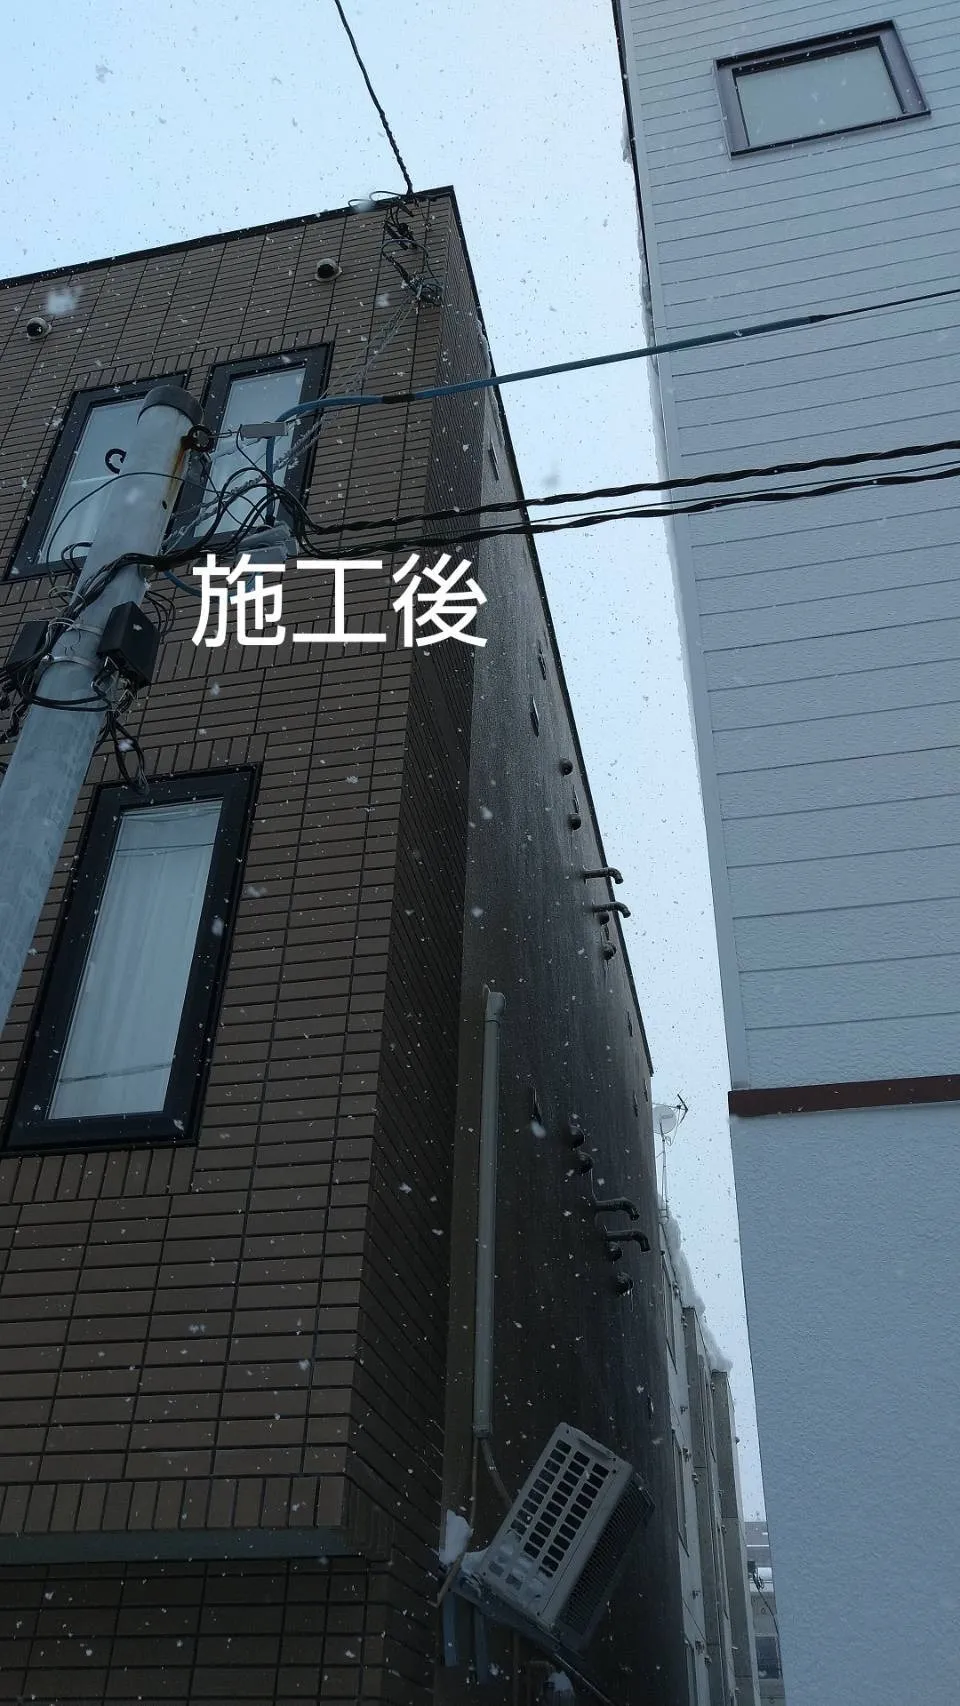 札幌市 豊平区 アパート 雪庇落とし工事